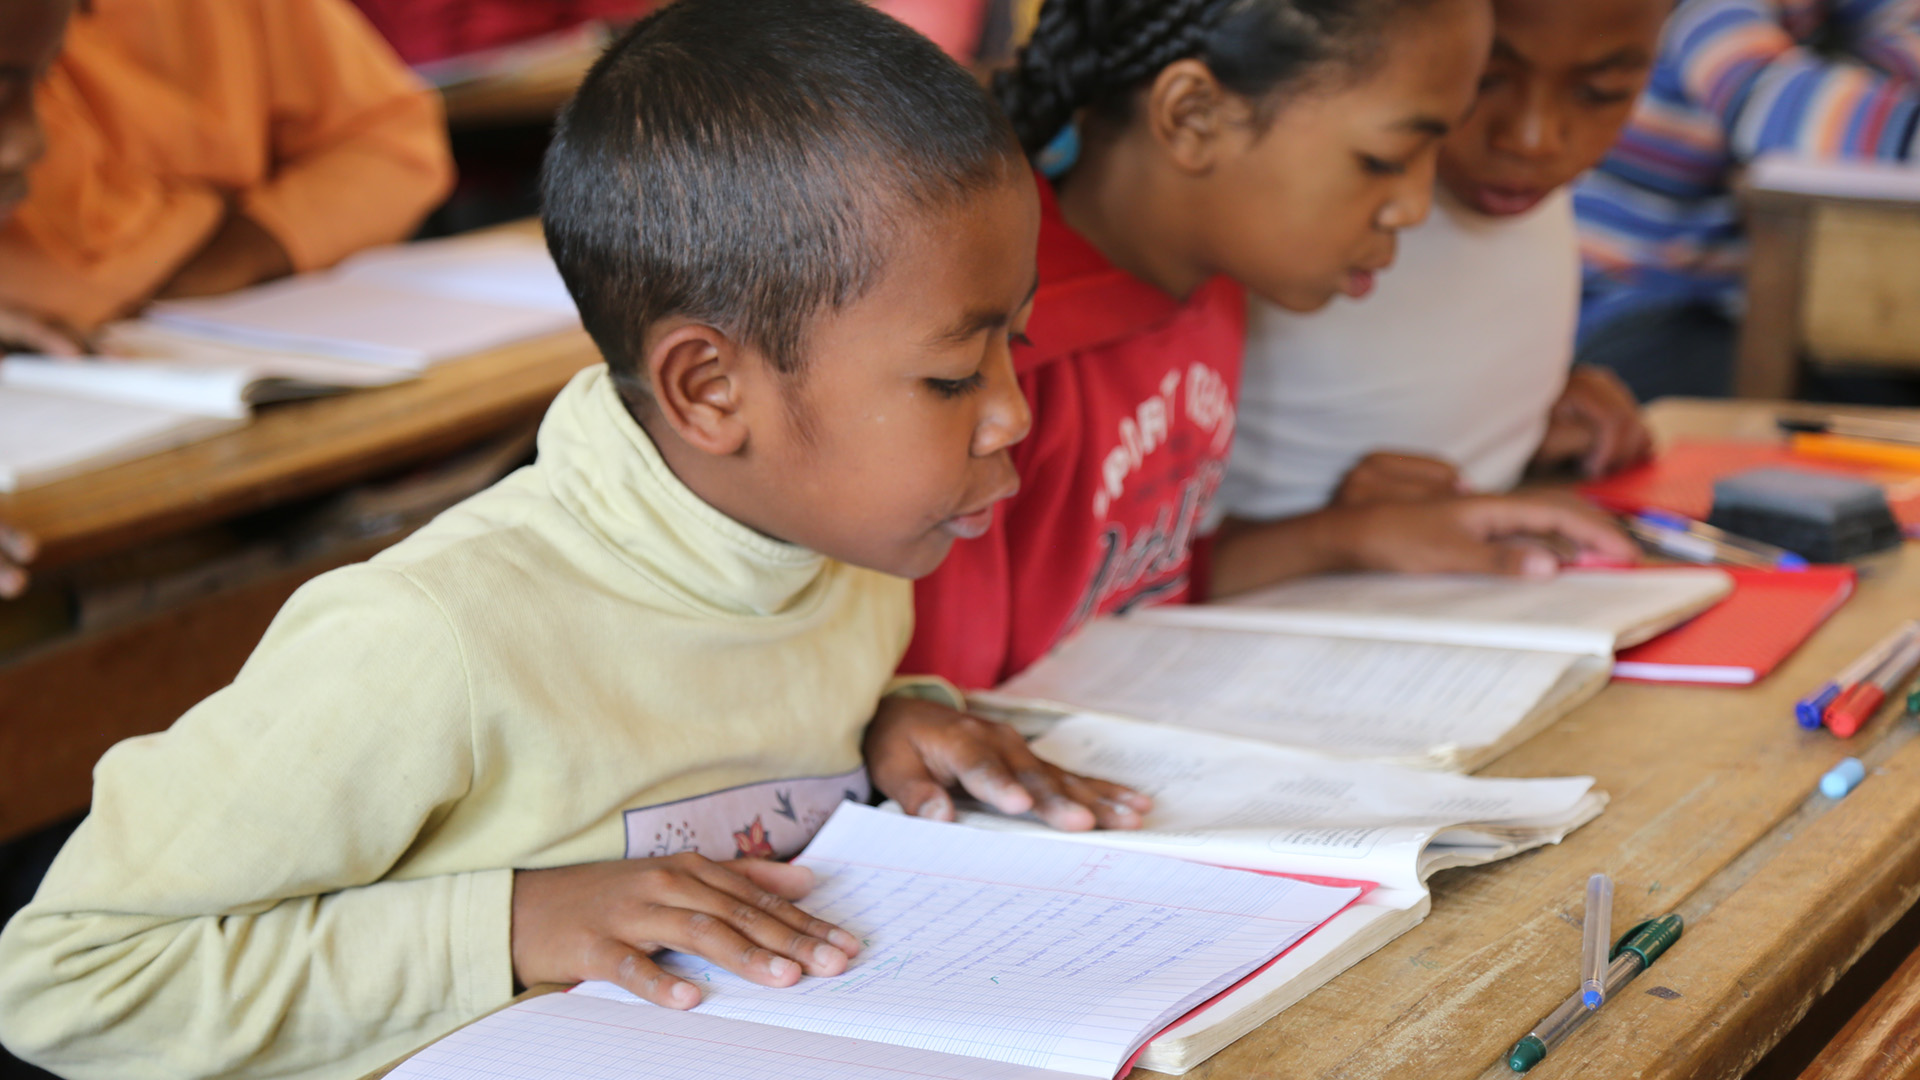 Credit/ALT text: A school boy reads a book. Madagascar. Credit: GPE/Carine Durand